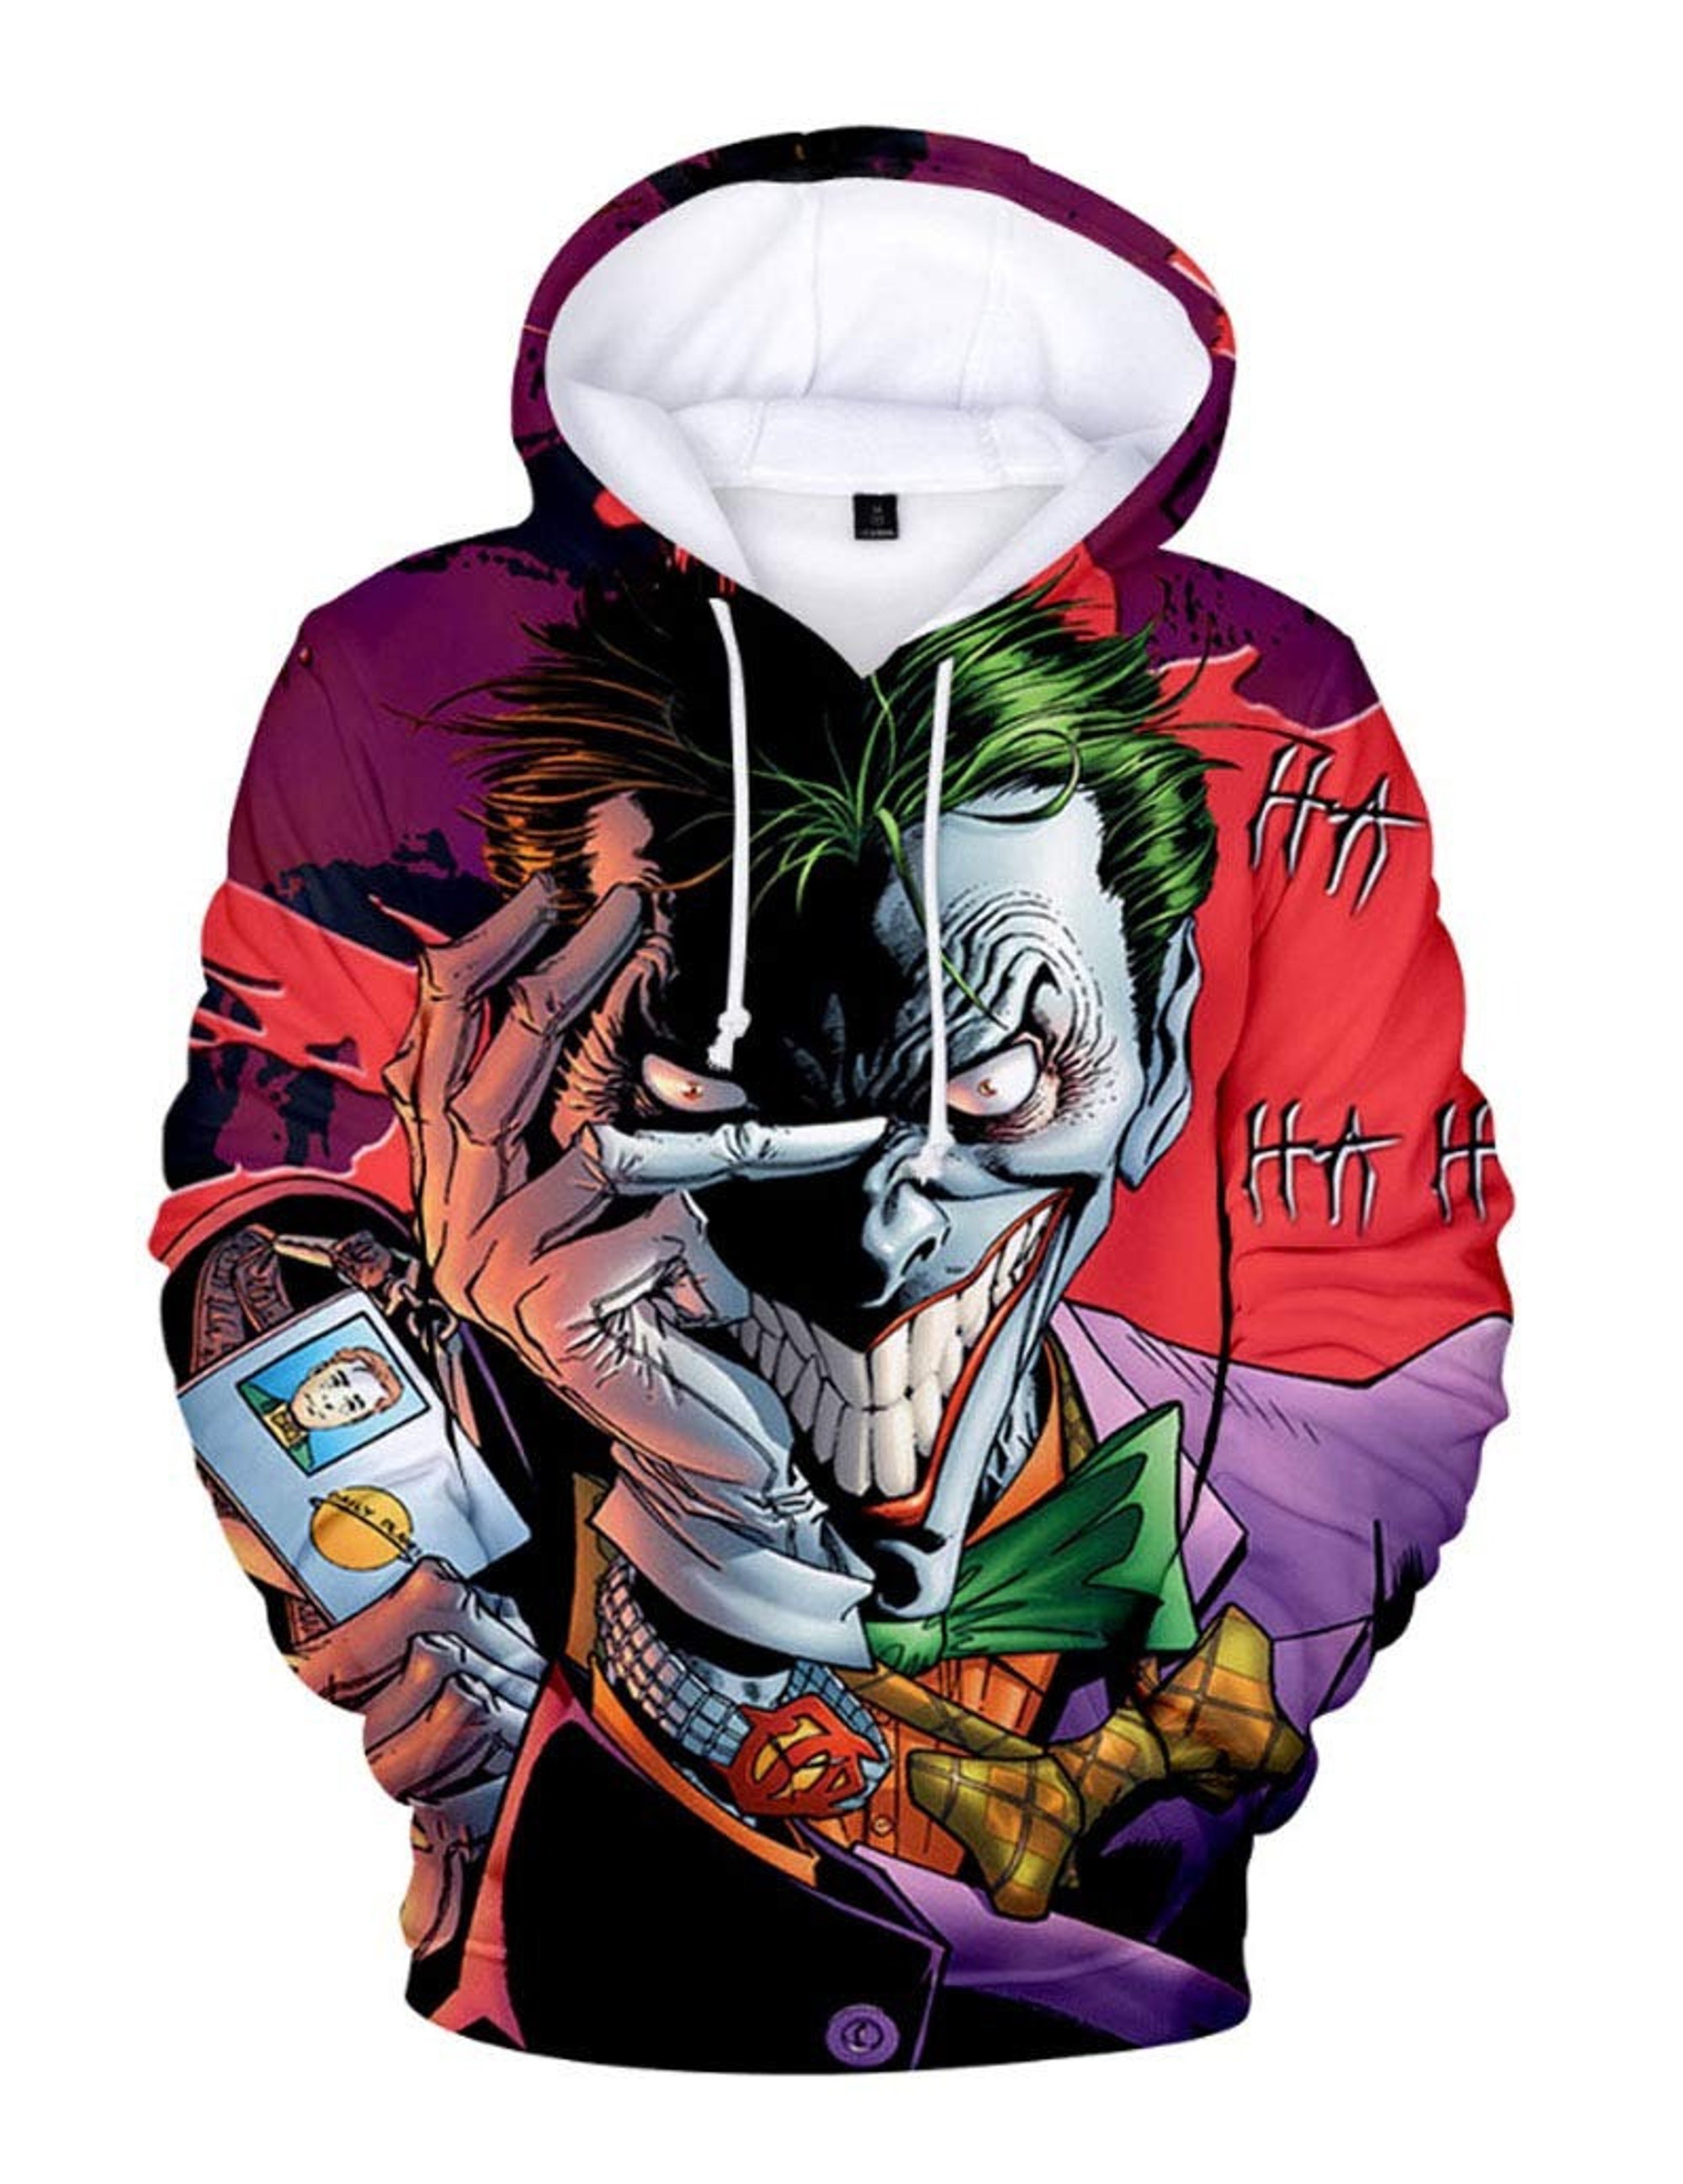 Discover Joker 3D Shirt, Hoodie Joker Style